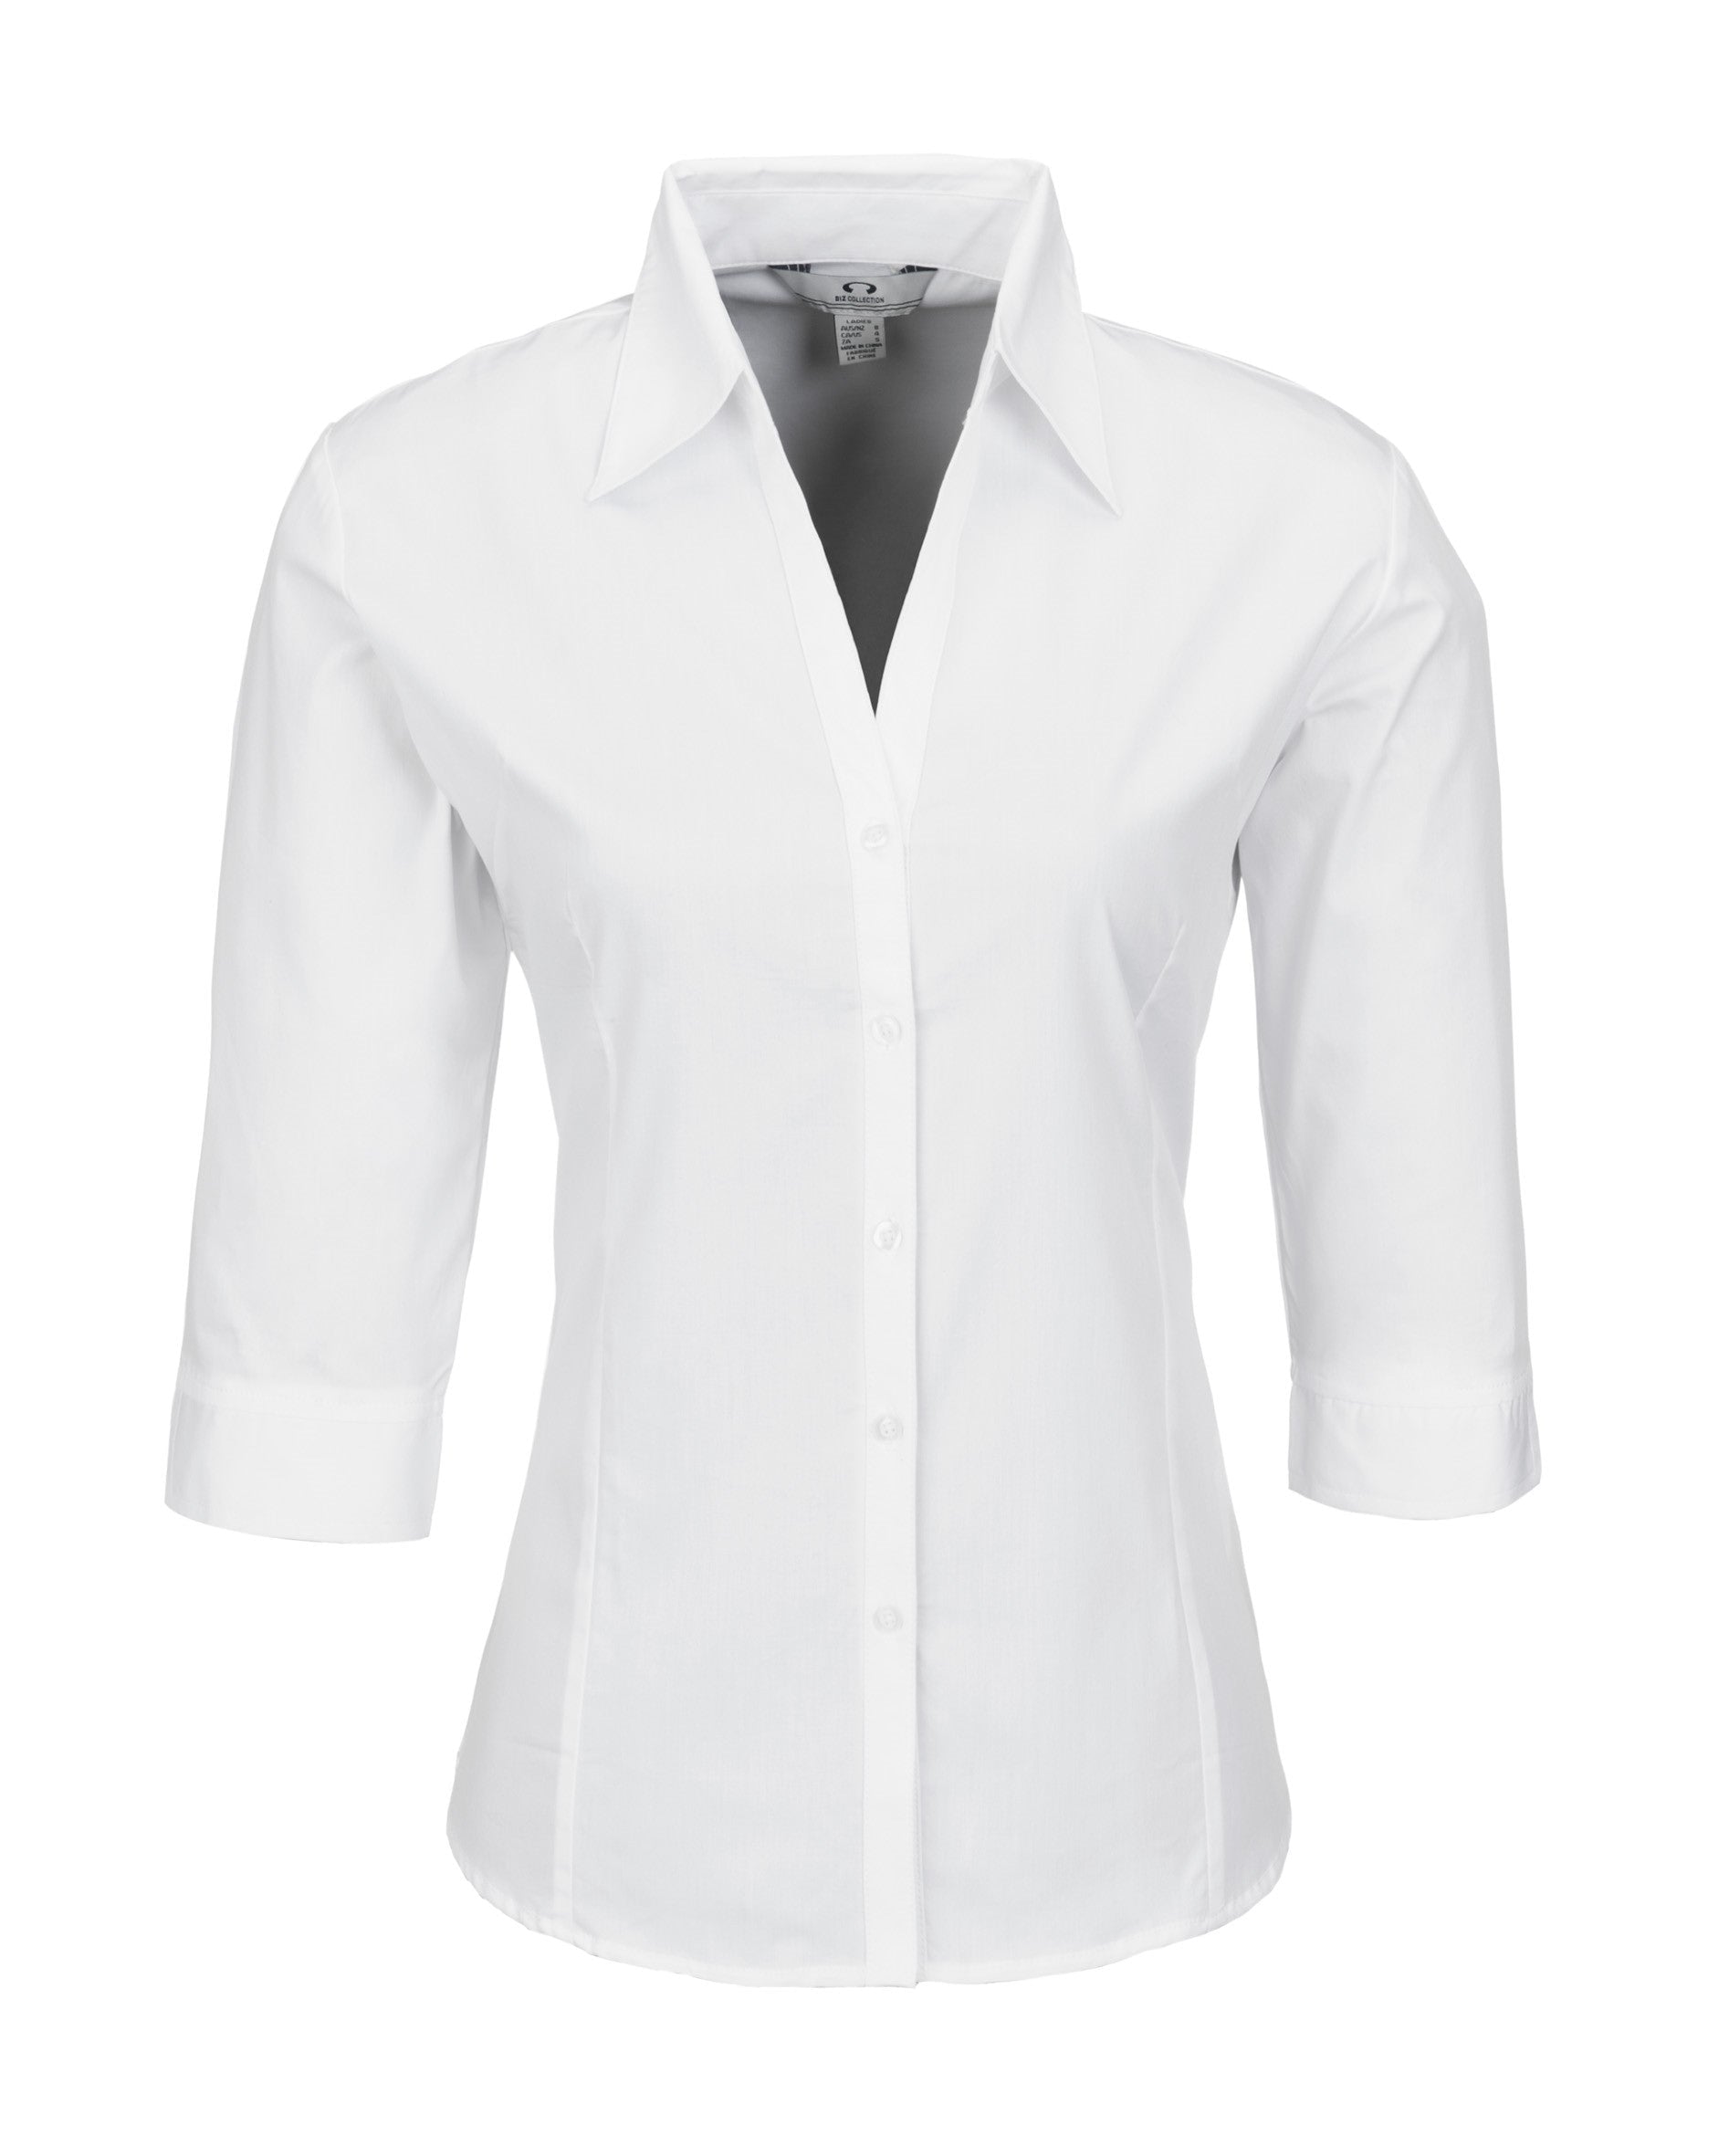 Ladies 3/4 Sleeve Metro Shirt - Black Only-2XL-White-W